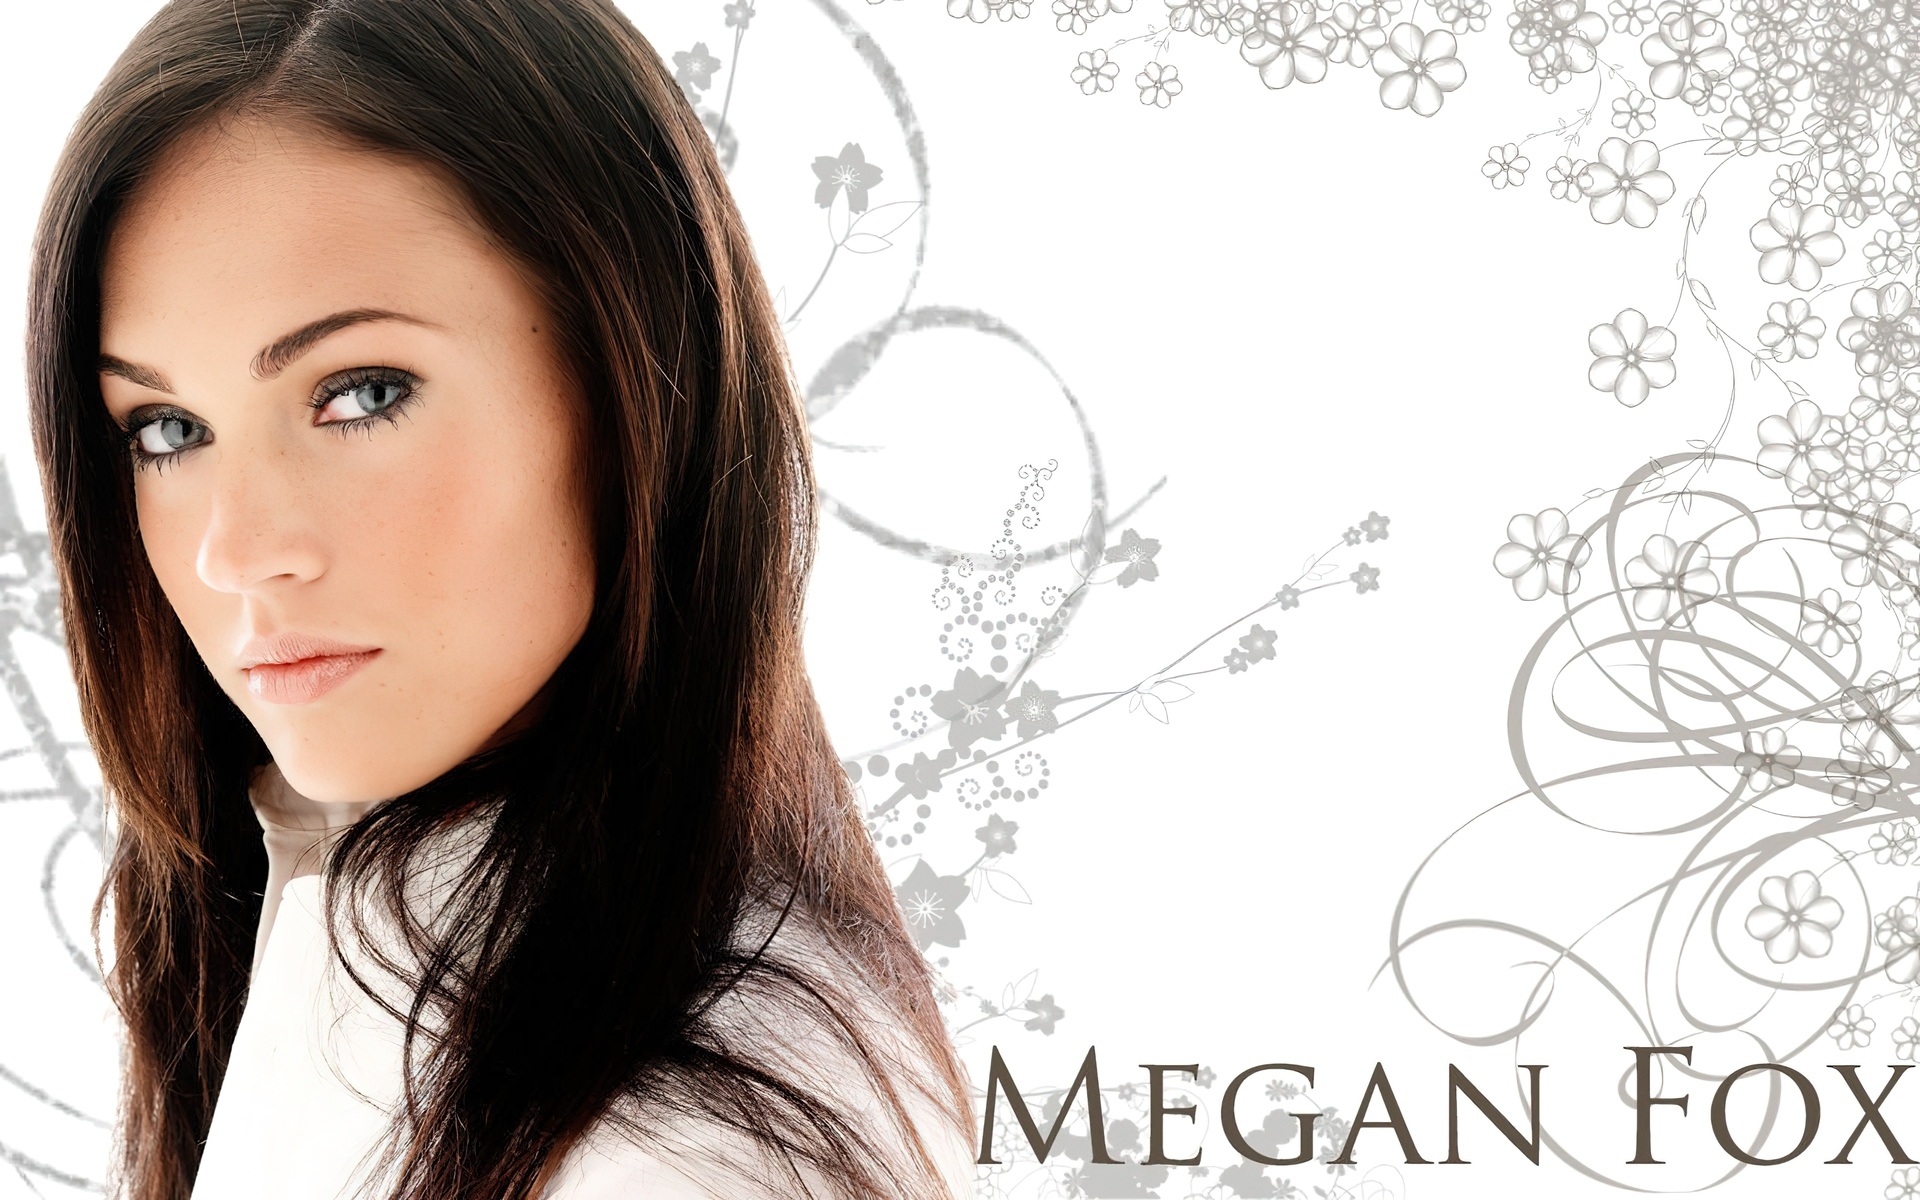 Megan Fox, Spojrzenie